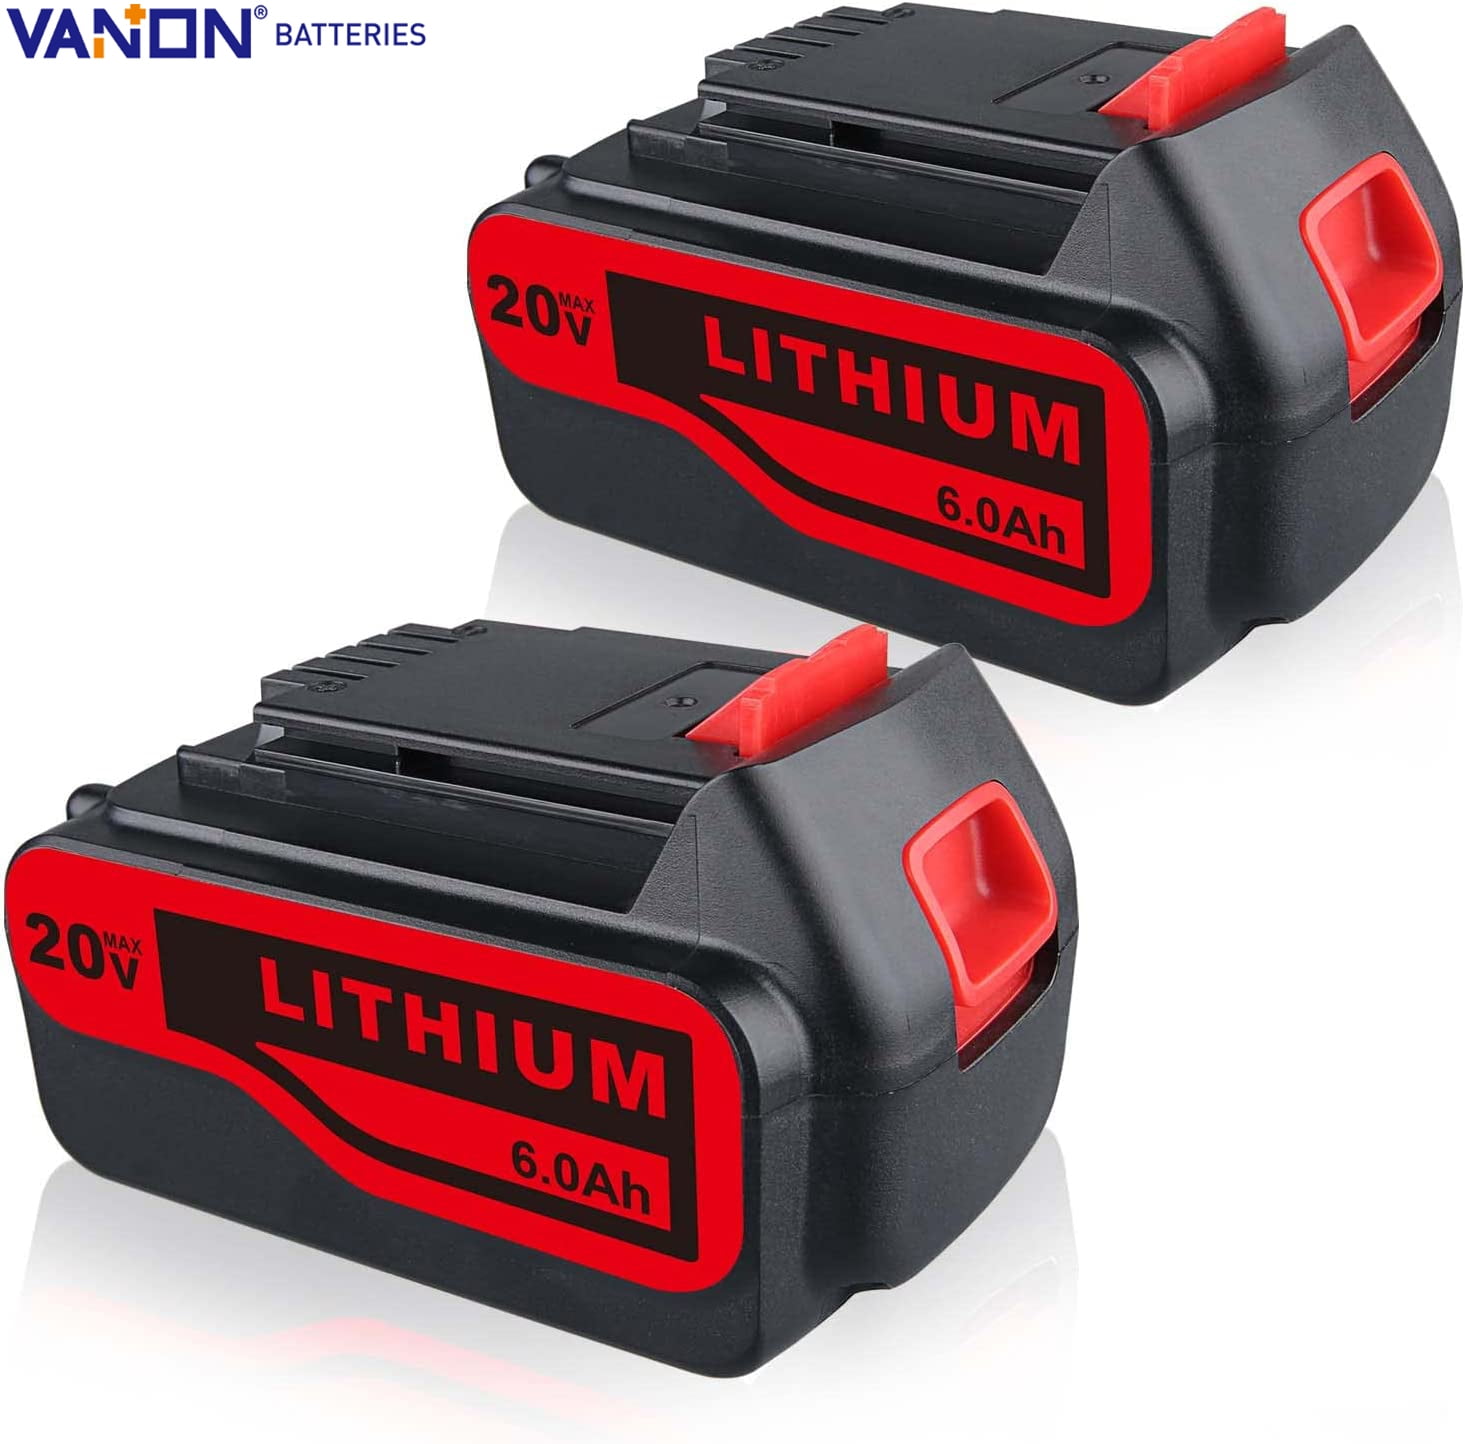 6000mAh 20V Max Lithium LB2X4020 Replacement Battery for Black & Decker 20V Battery Lbxr20 LBXR20-OPE LB20 Lbx20 LBX4020 LB2X4020 LB2X4020-OPE